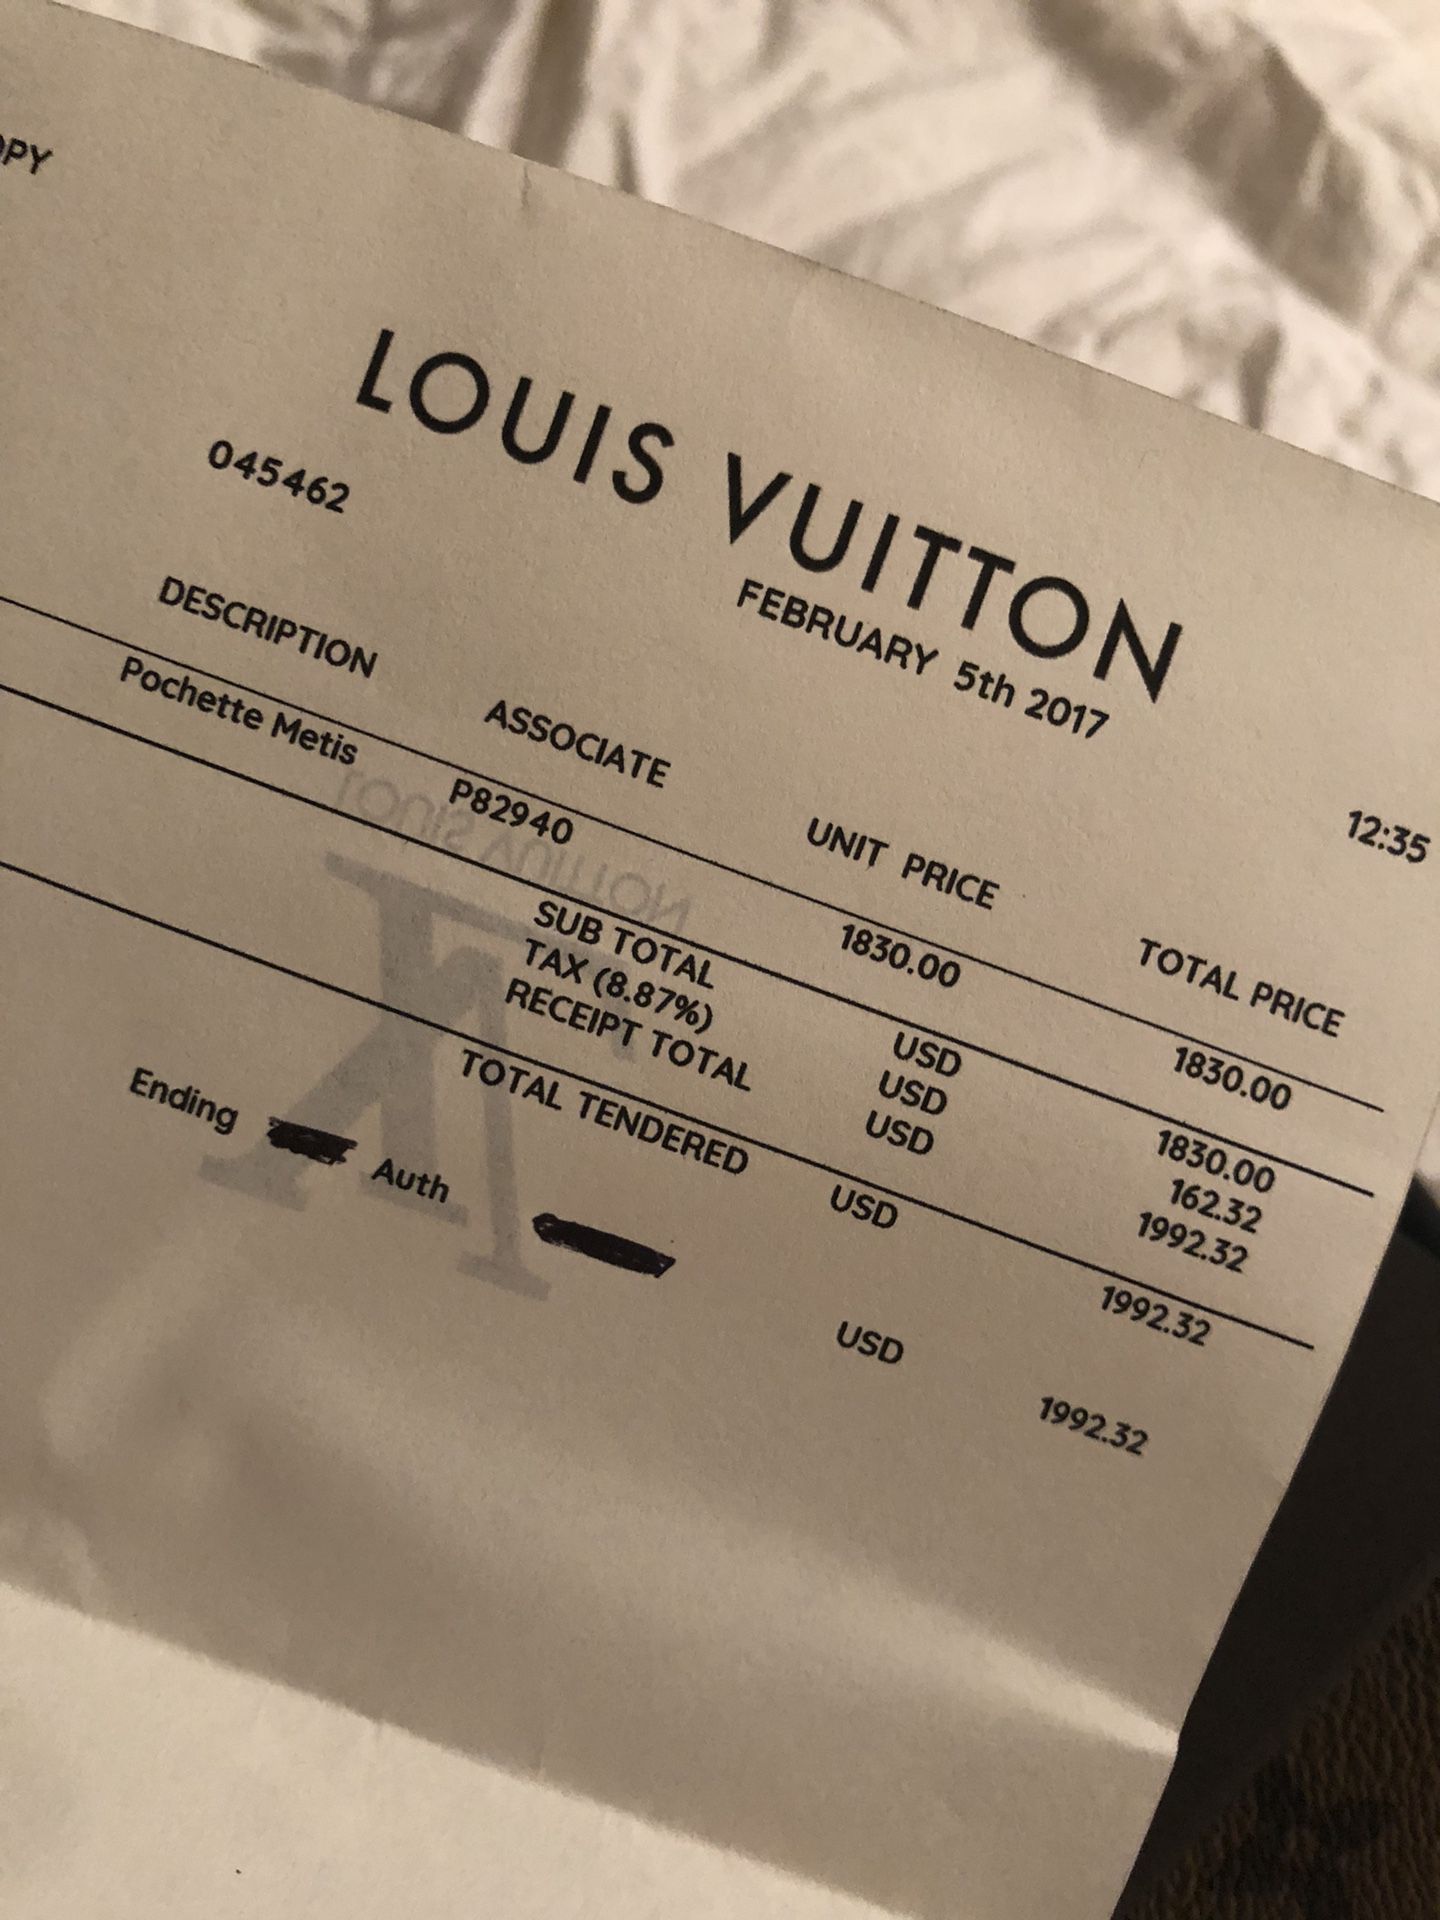 Louis Vuitton Pochette metis M41465 for Sale in Brisbane, CA - OfferUp